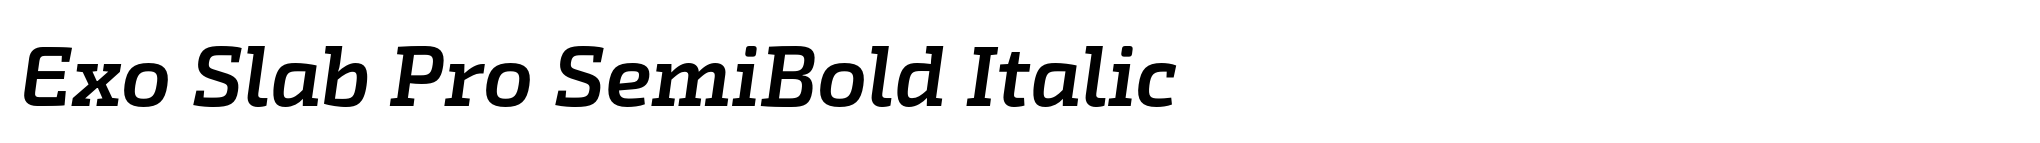 Exo Slab Pro SemiBold Italic image